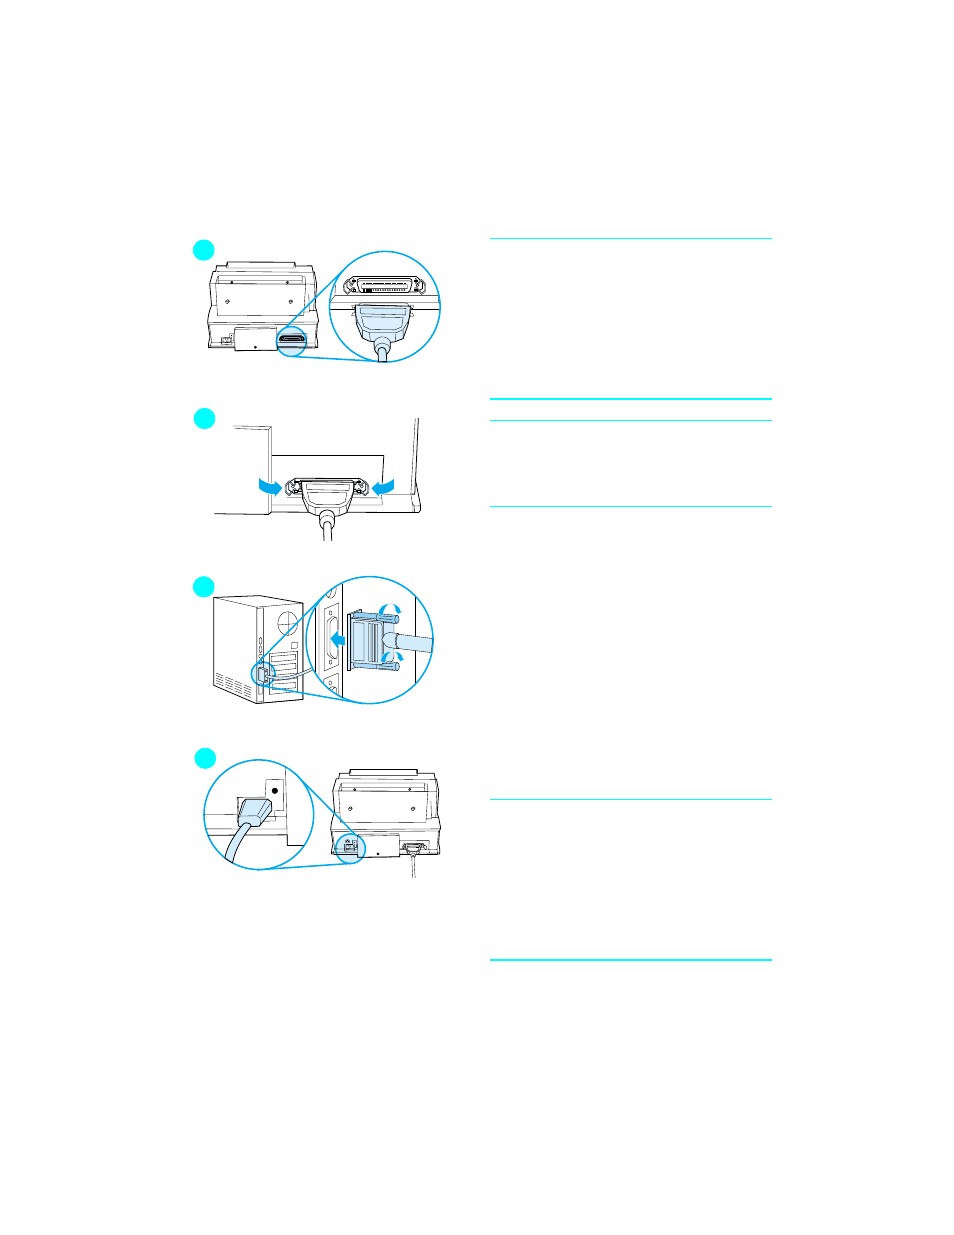 Menghubungkan kabel printer | HP LaserJet 6L Pro Printer User Manual | Page  99 / 178 | Original mode